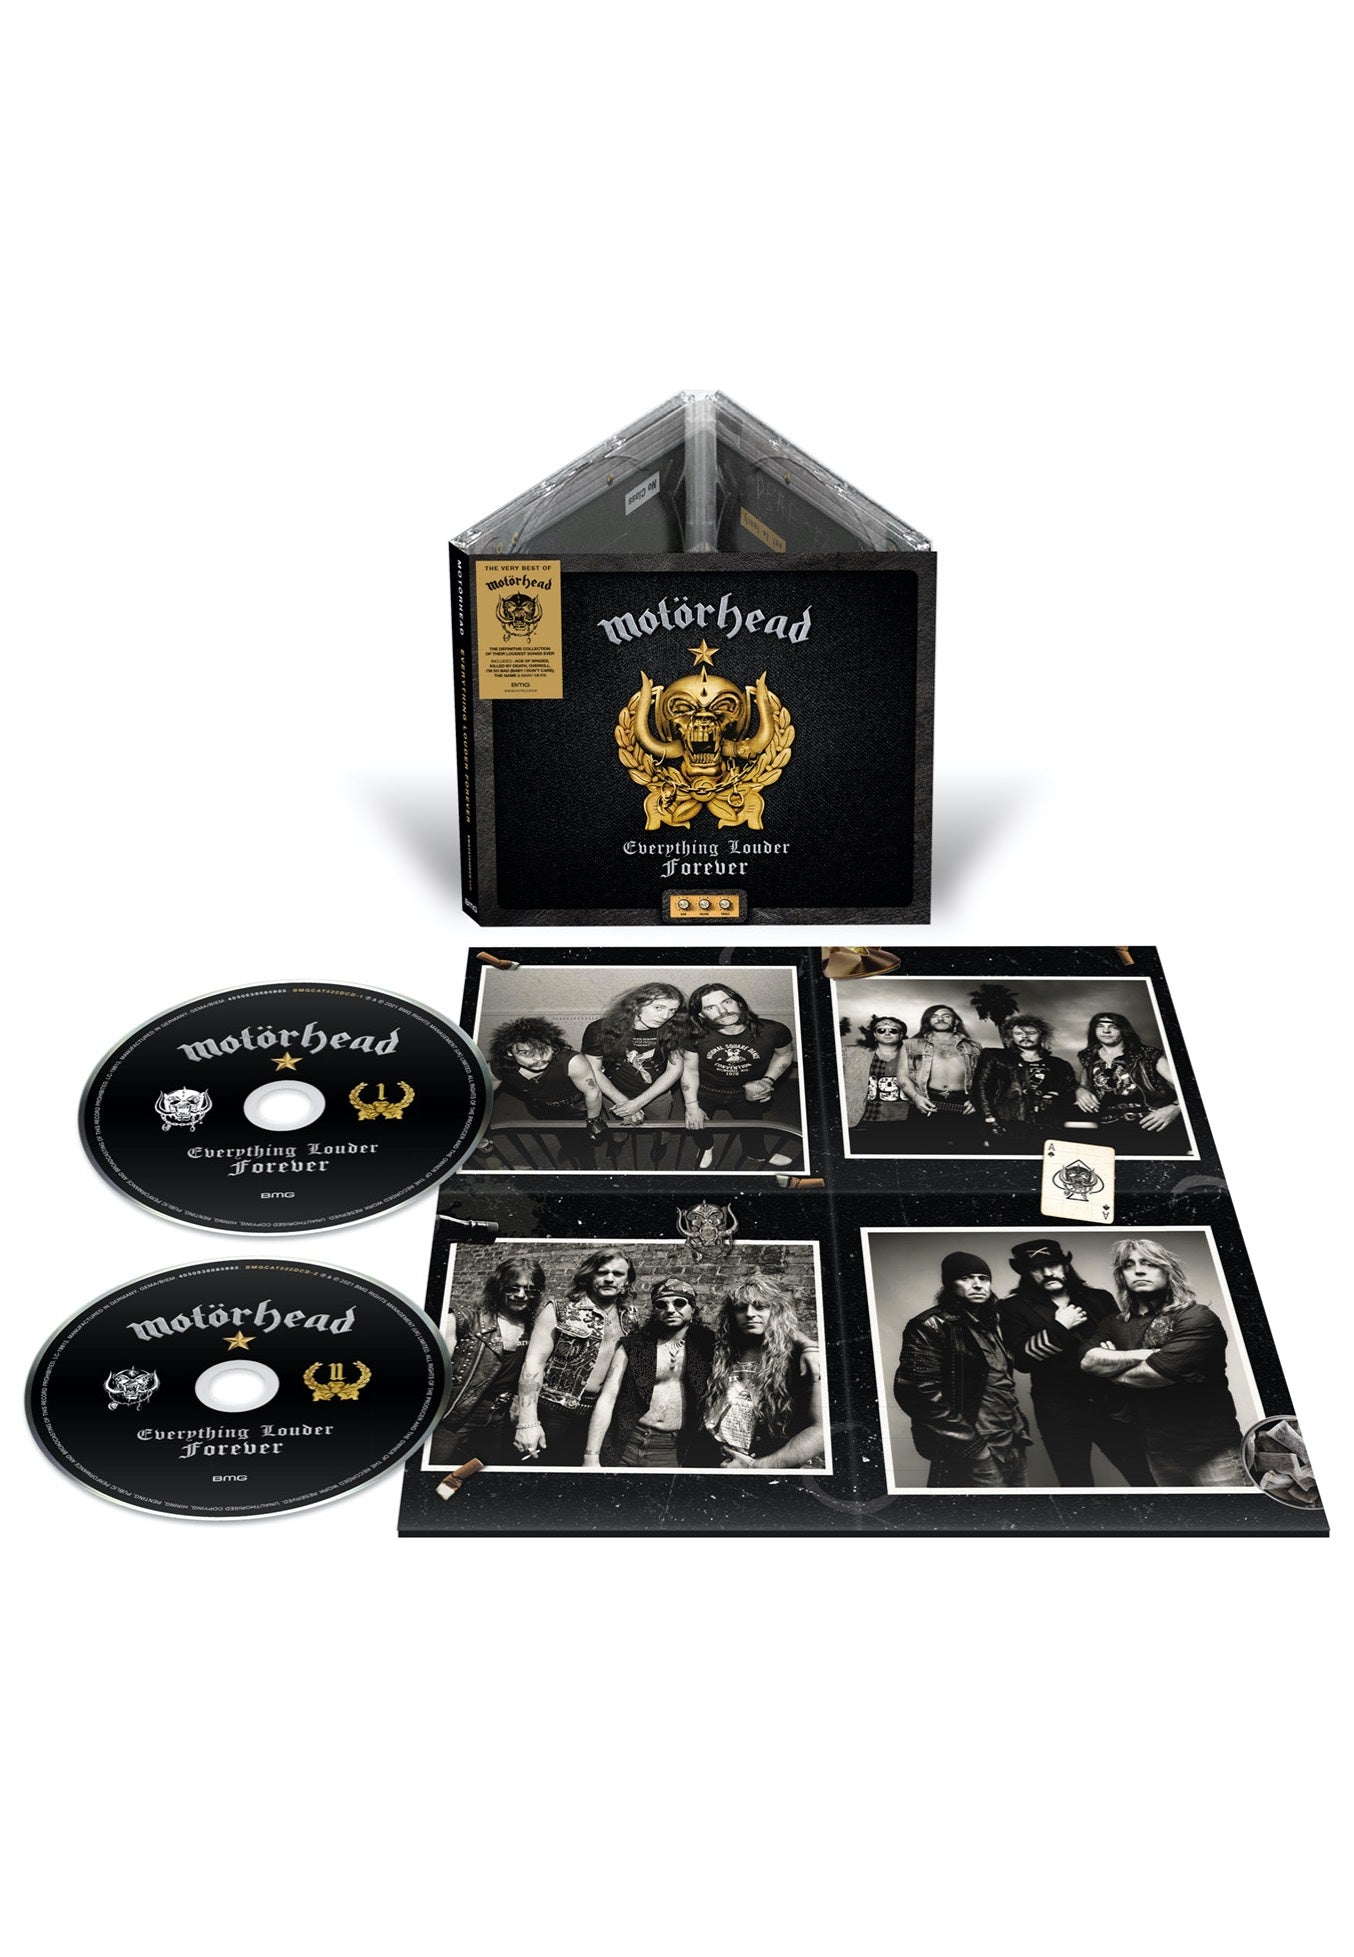 Motörhead - Everything Louder Forever - The Very Best Of - Digipak 2 CD